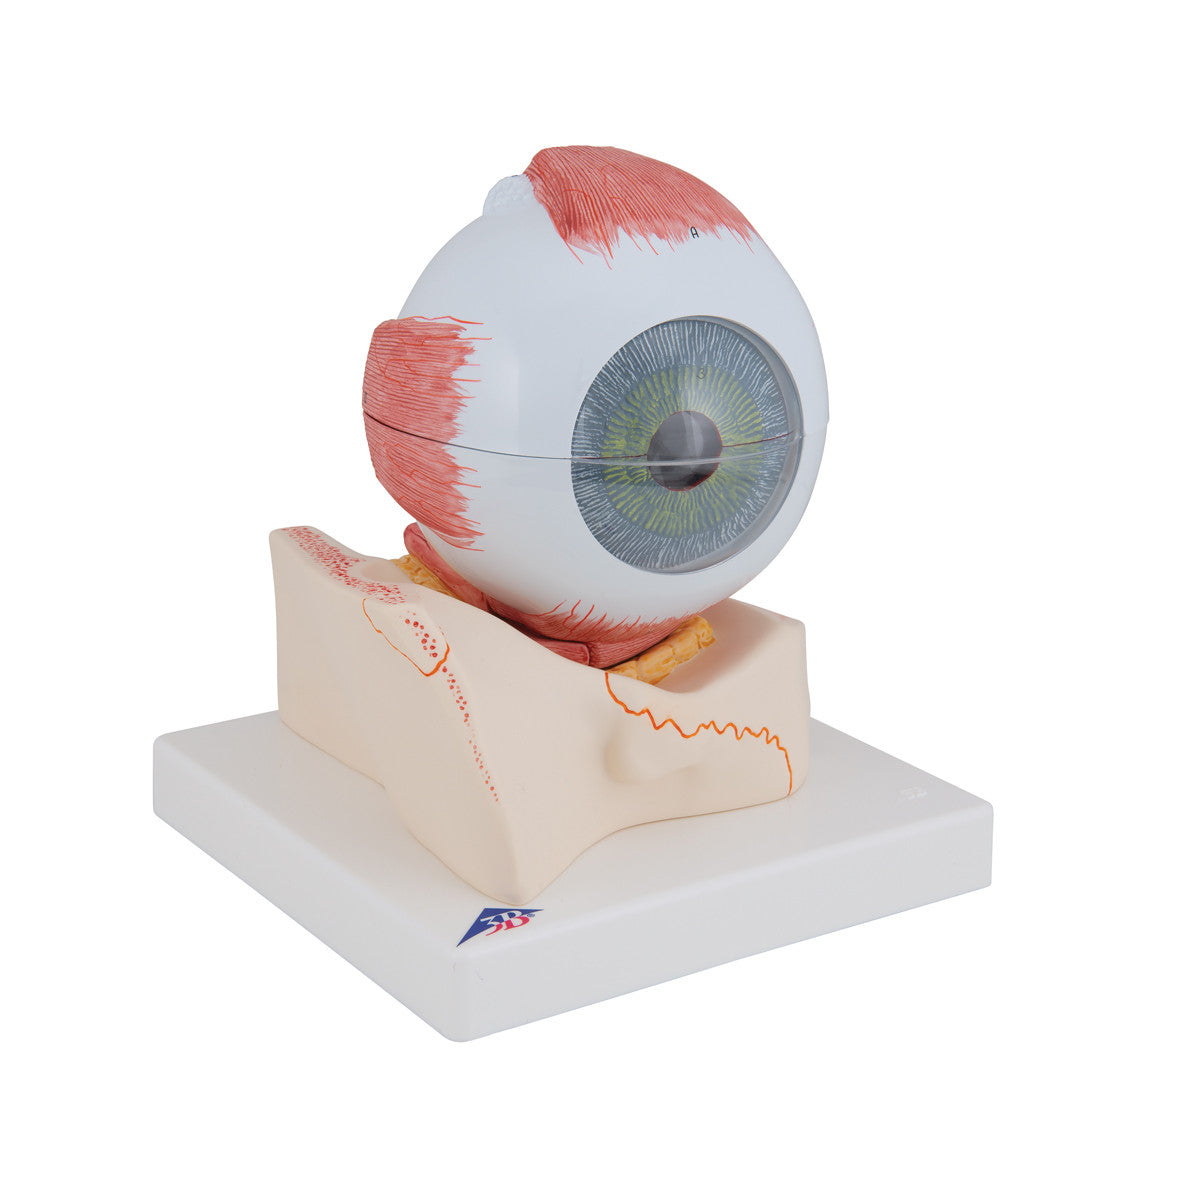 Eye Model in Orbit | 3B Scientific F11